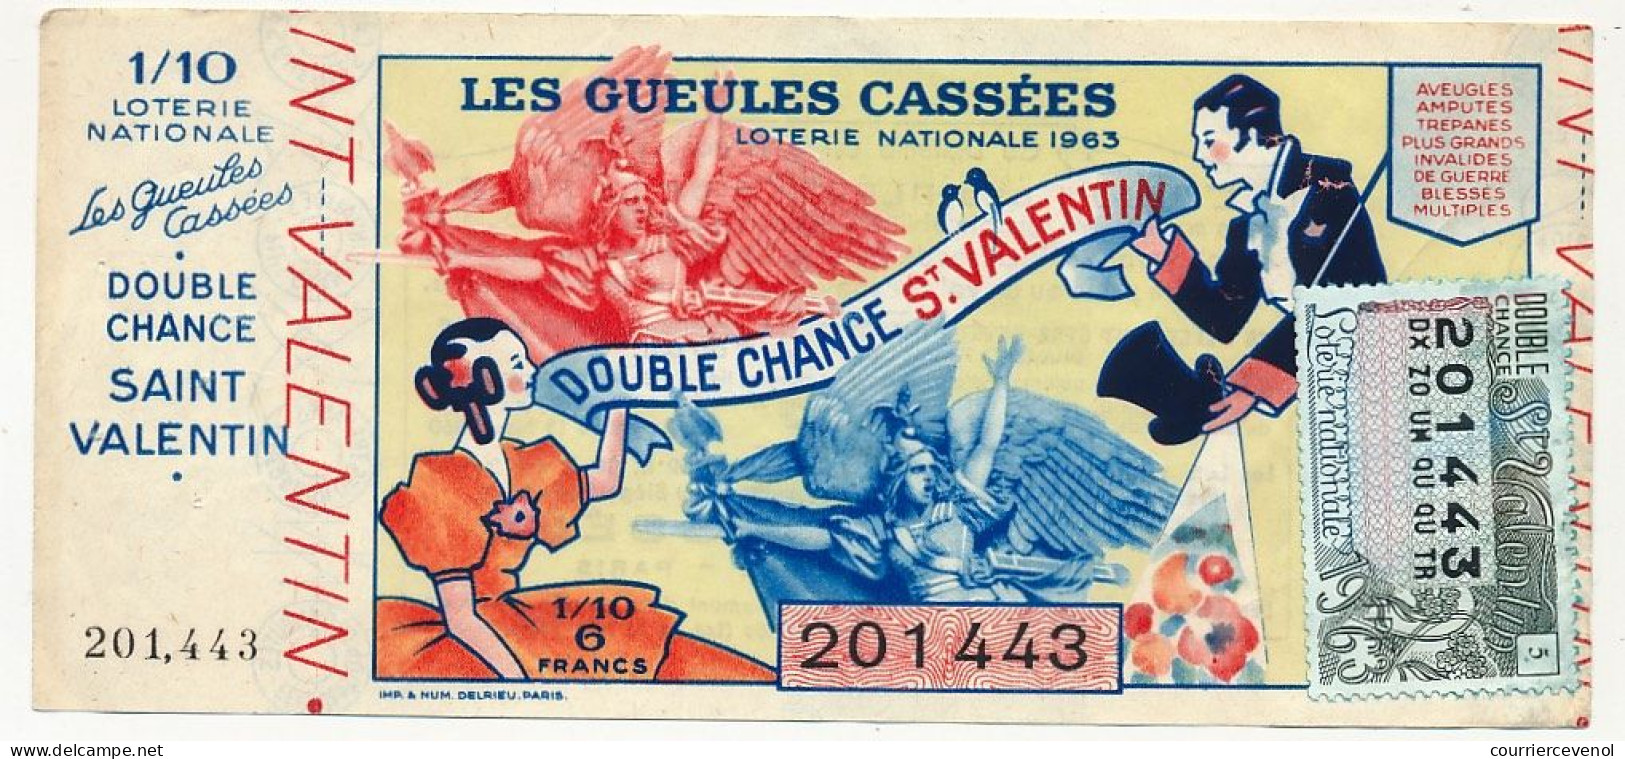 FRANCE - Loterie Nationale - Double Chance Saint Valentin - Gueules Cassées - 1/10ème 1963 - Billets De Loterie